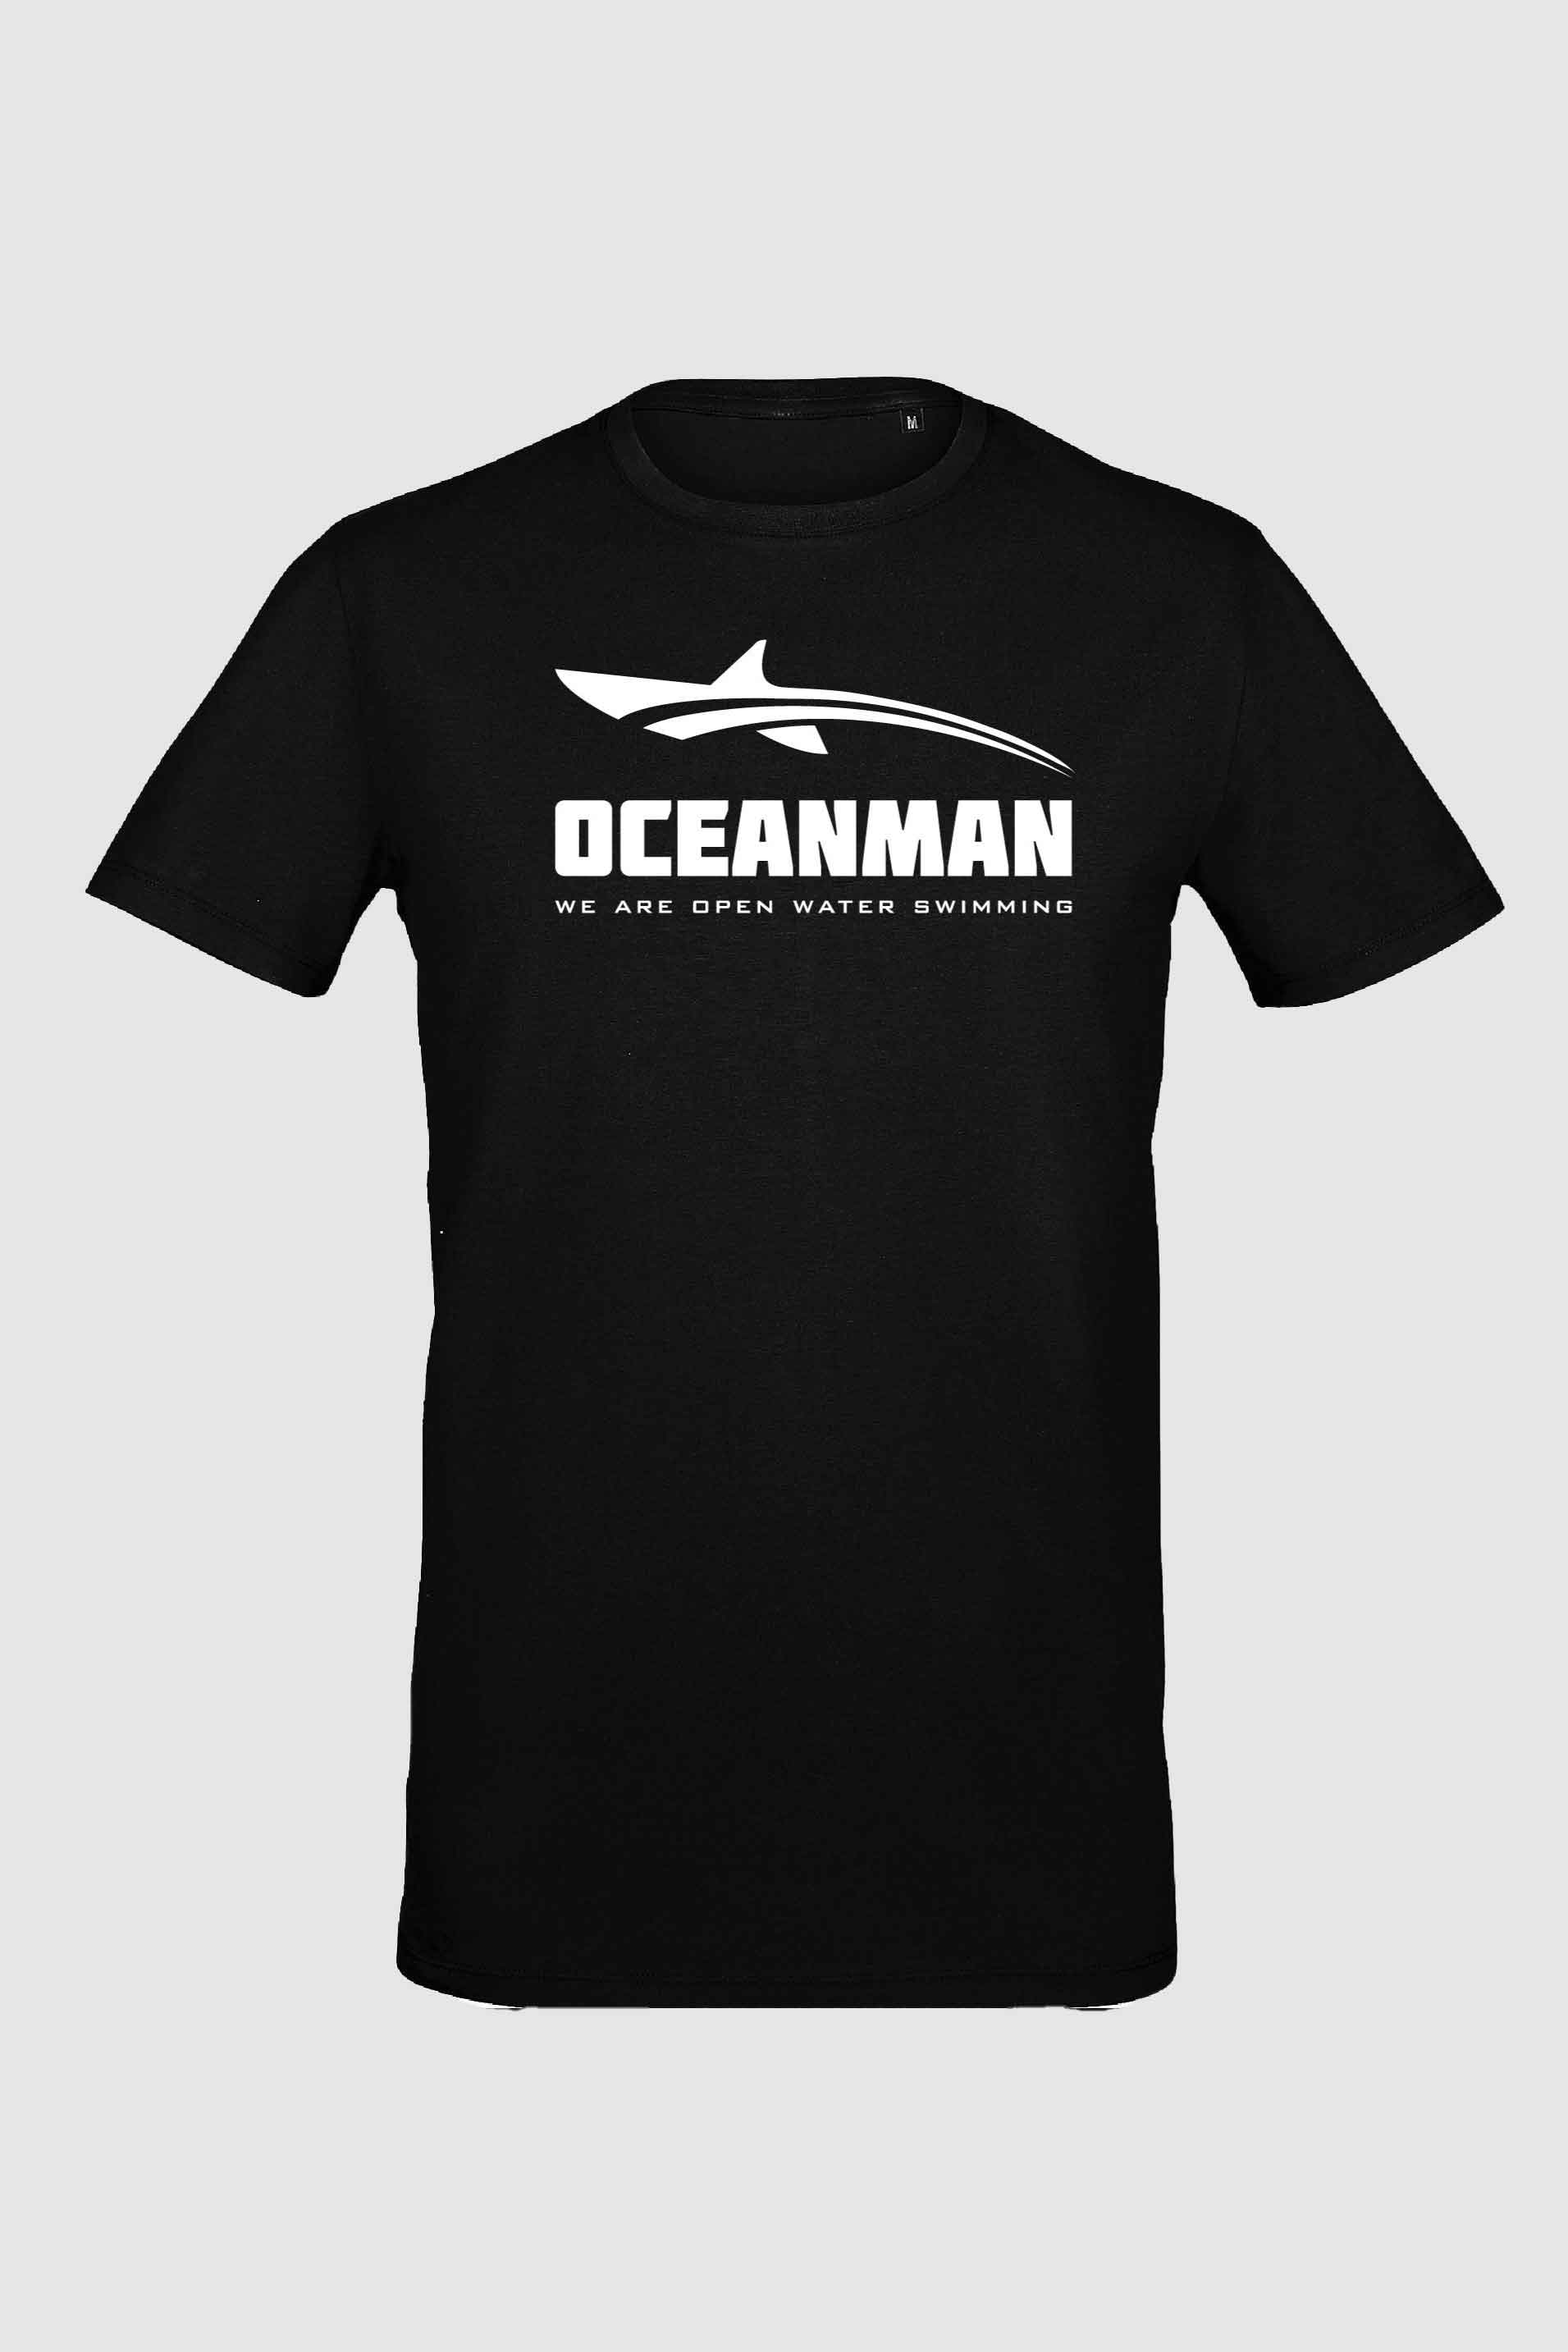 Oceanman icon t shirt black men